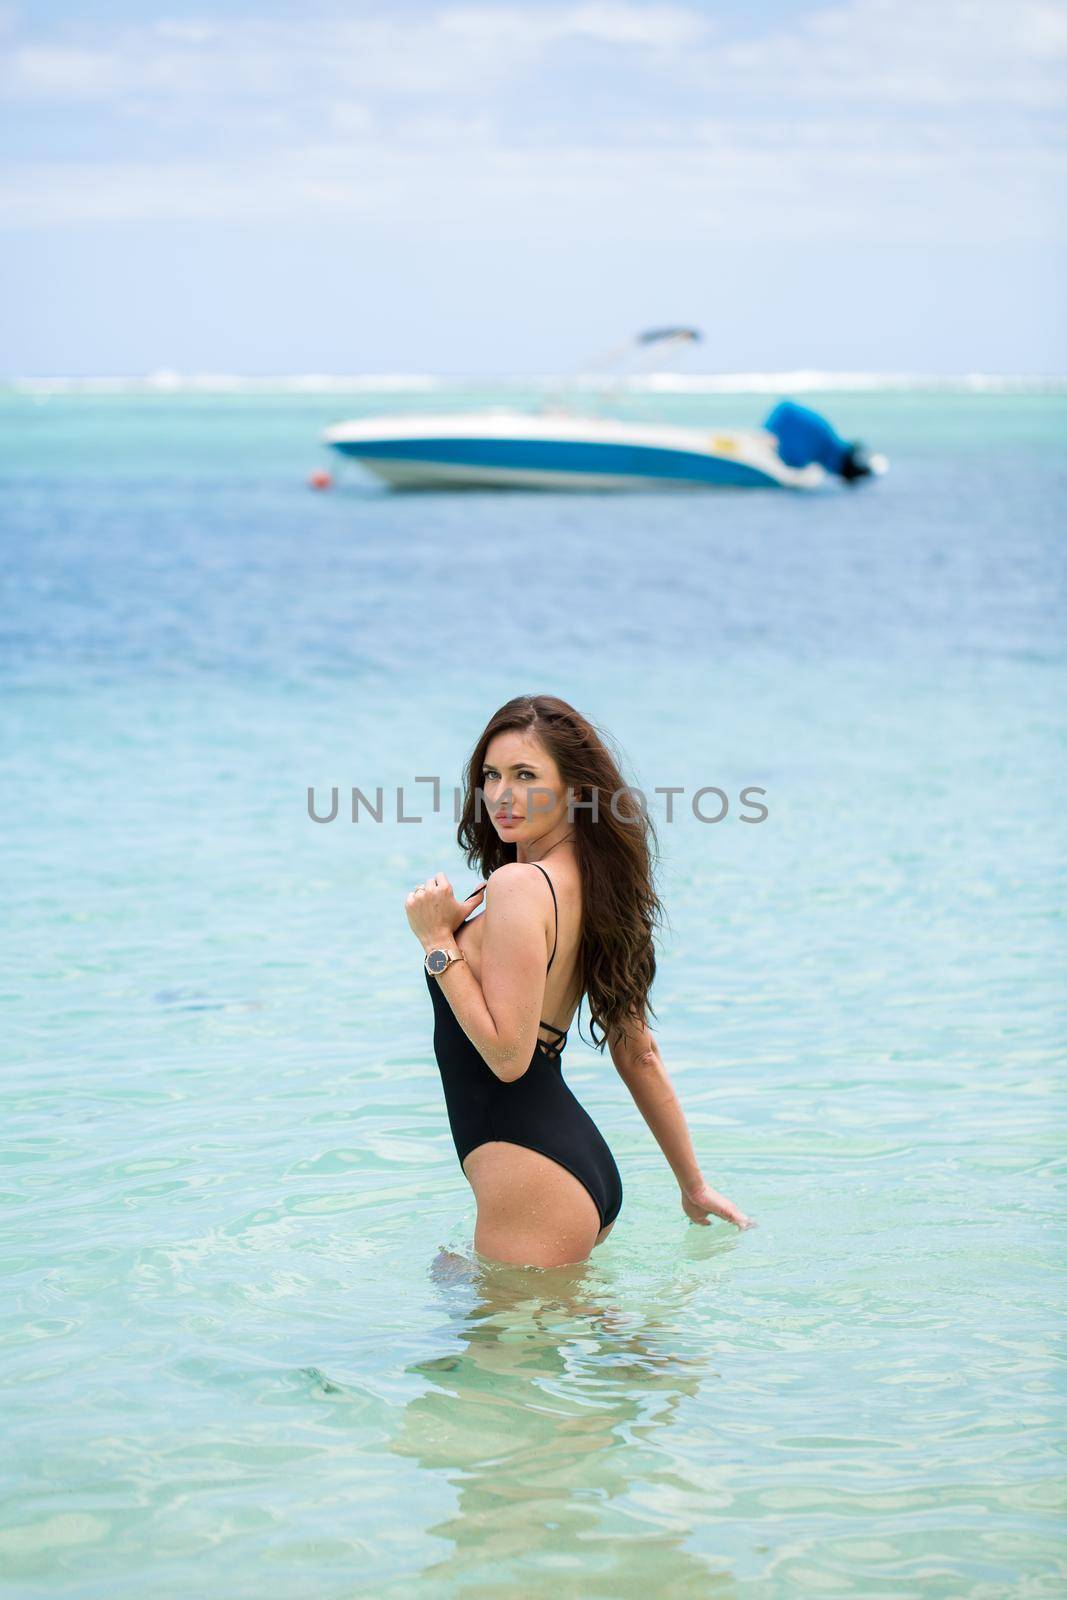 Sexy beach model woman having fun swimming in ocean